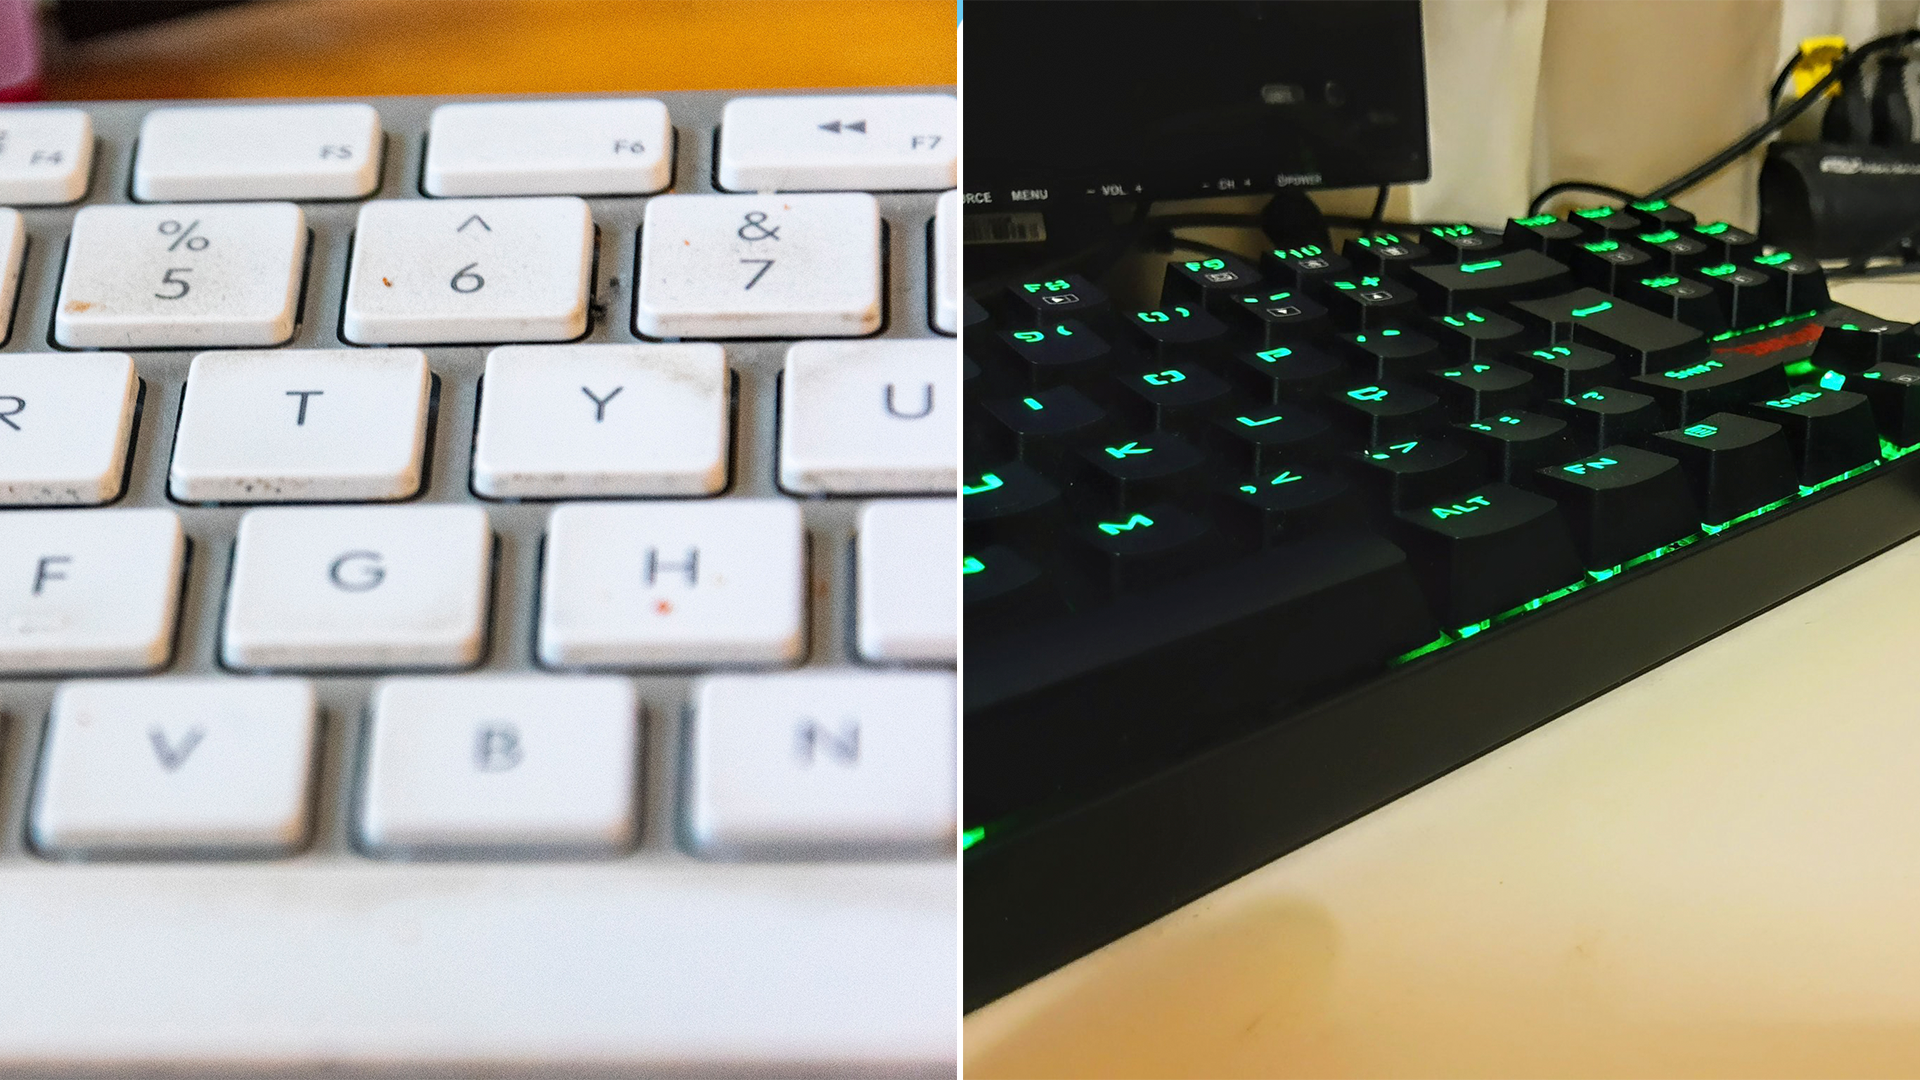 Los teclados suelen acumular suciedad por el uso diario, pero existen varias soluciones (Crédito: pixbay)